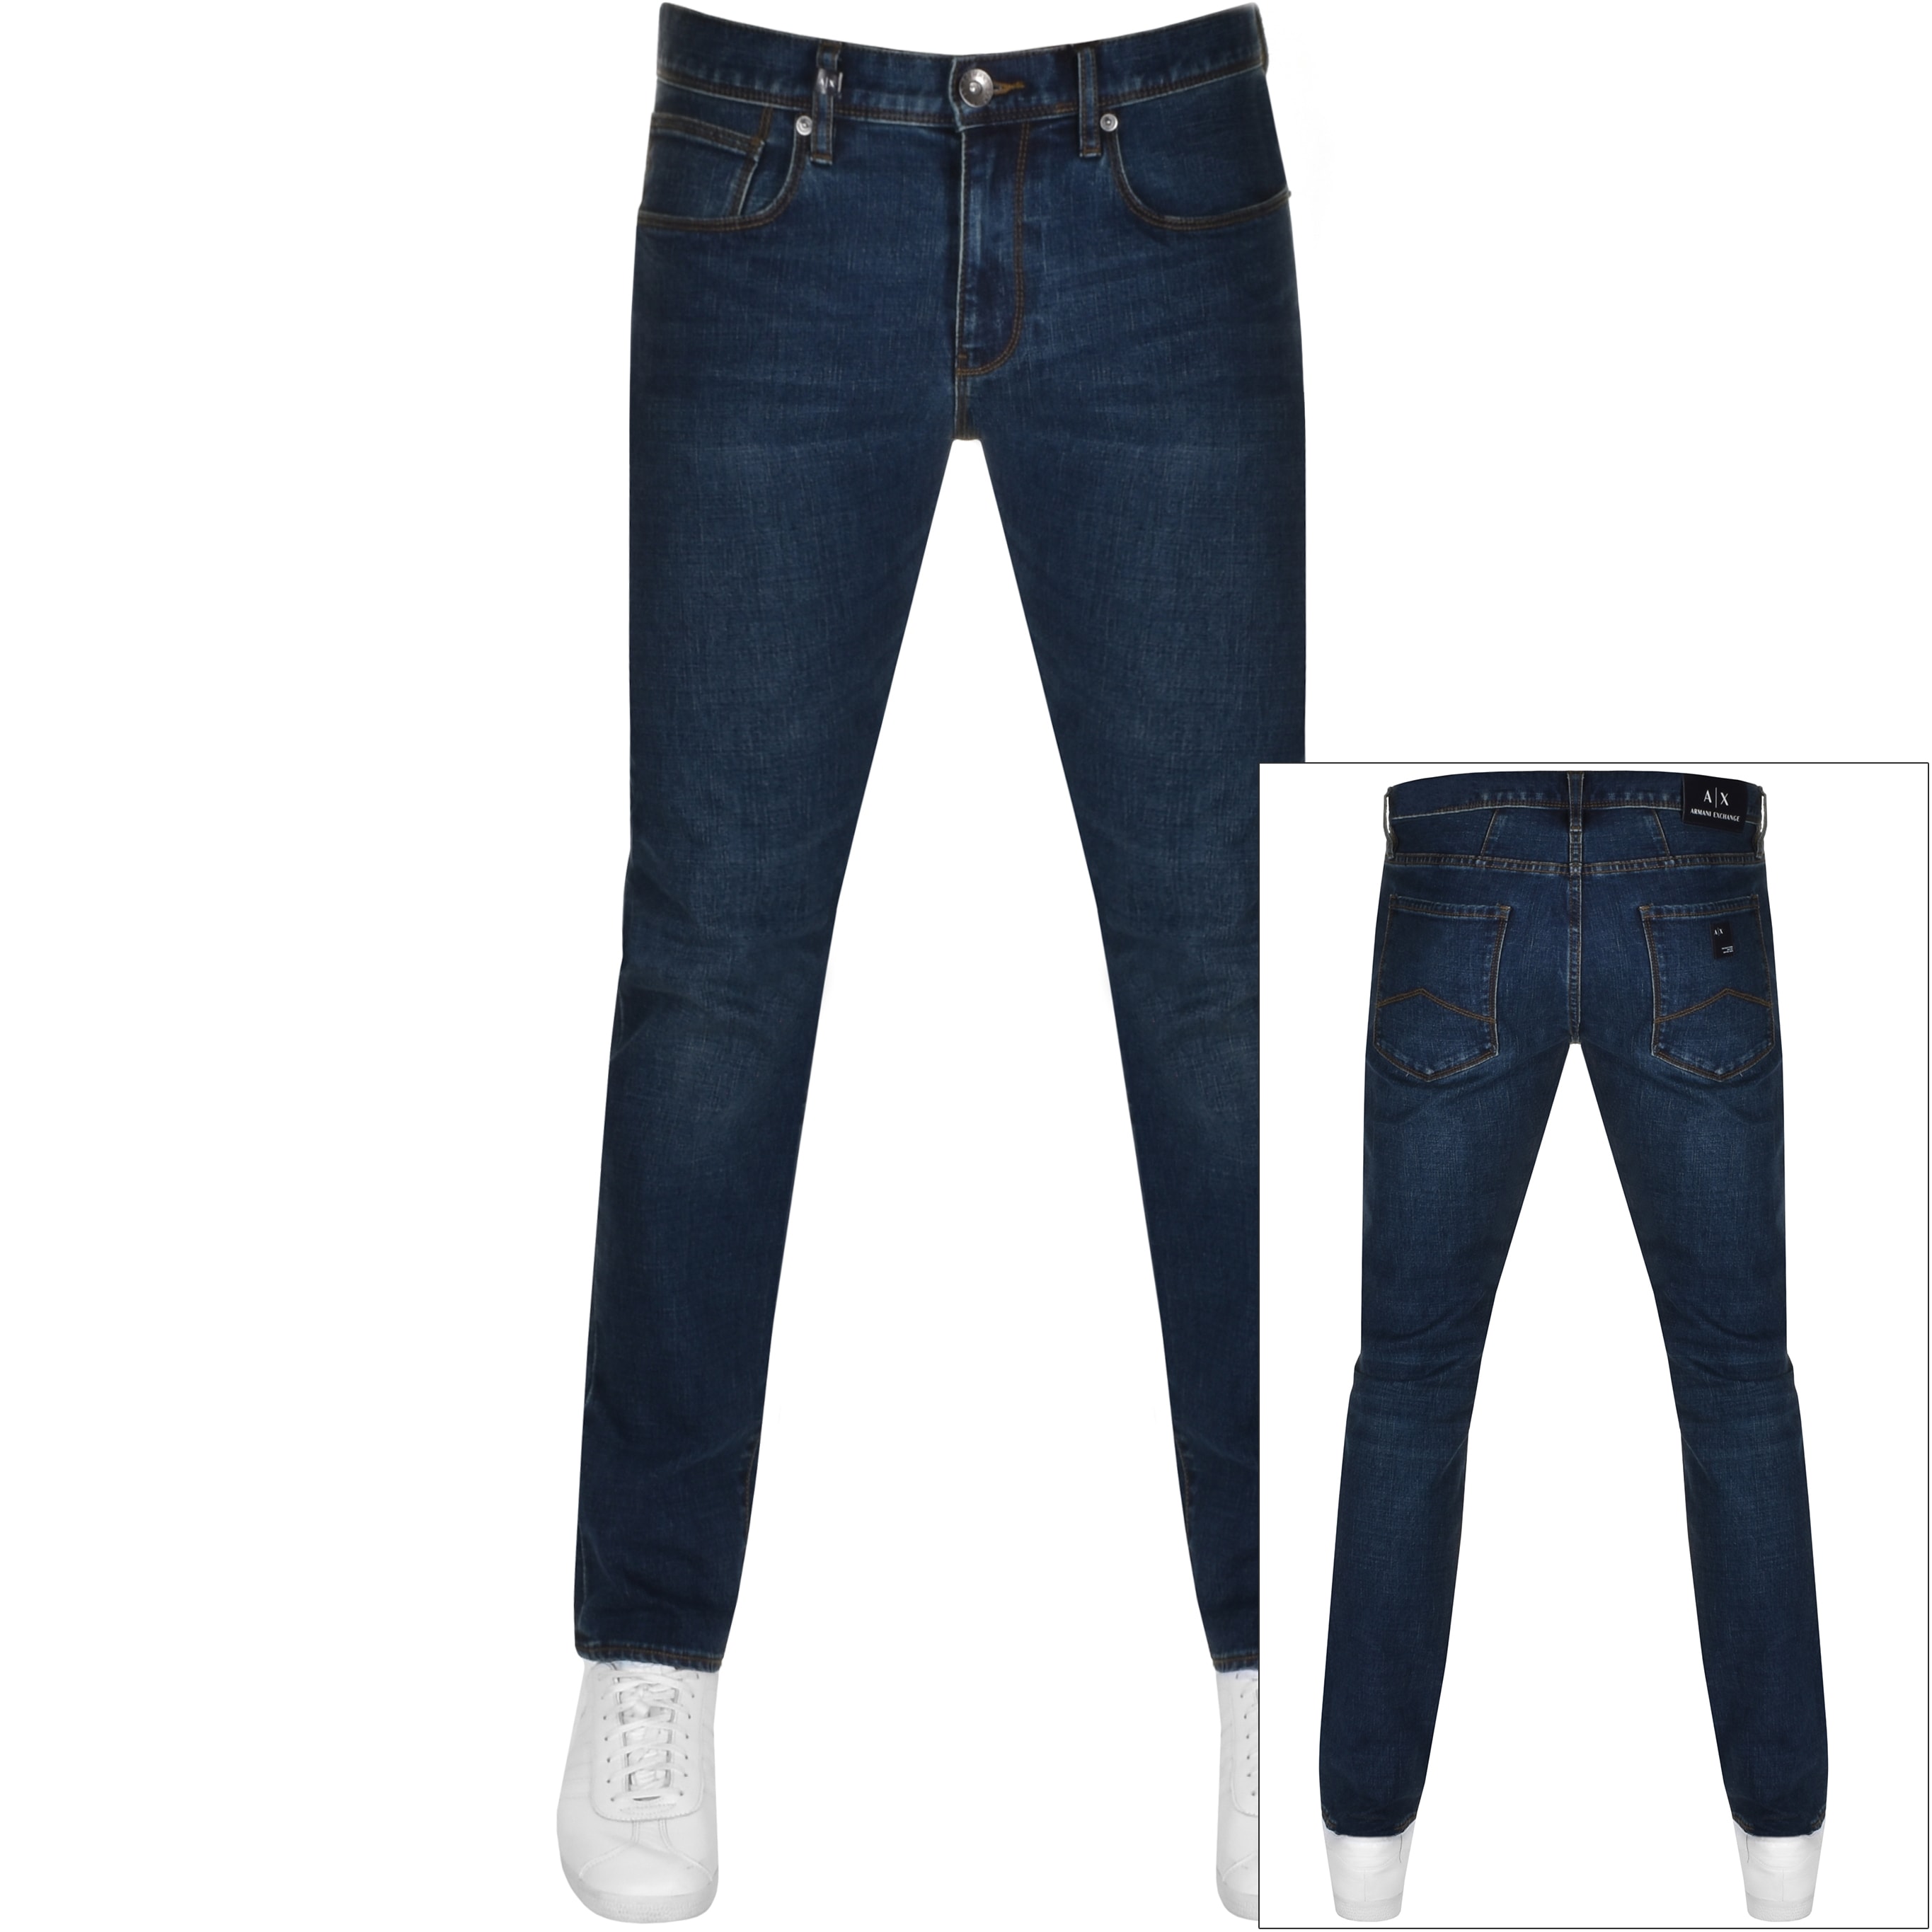 armani exchange jeans uk